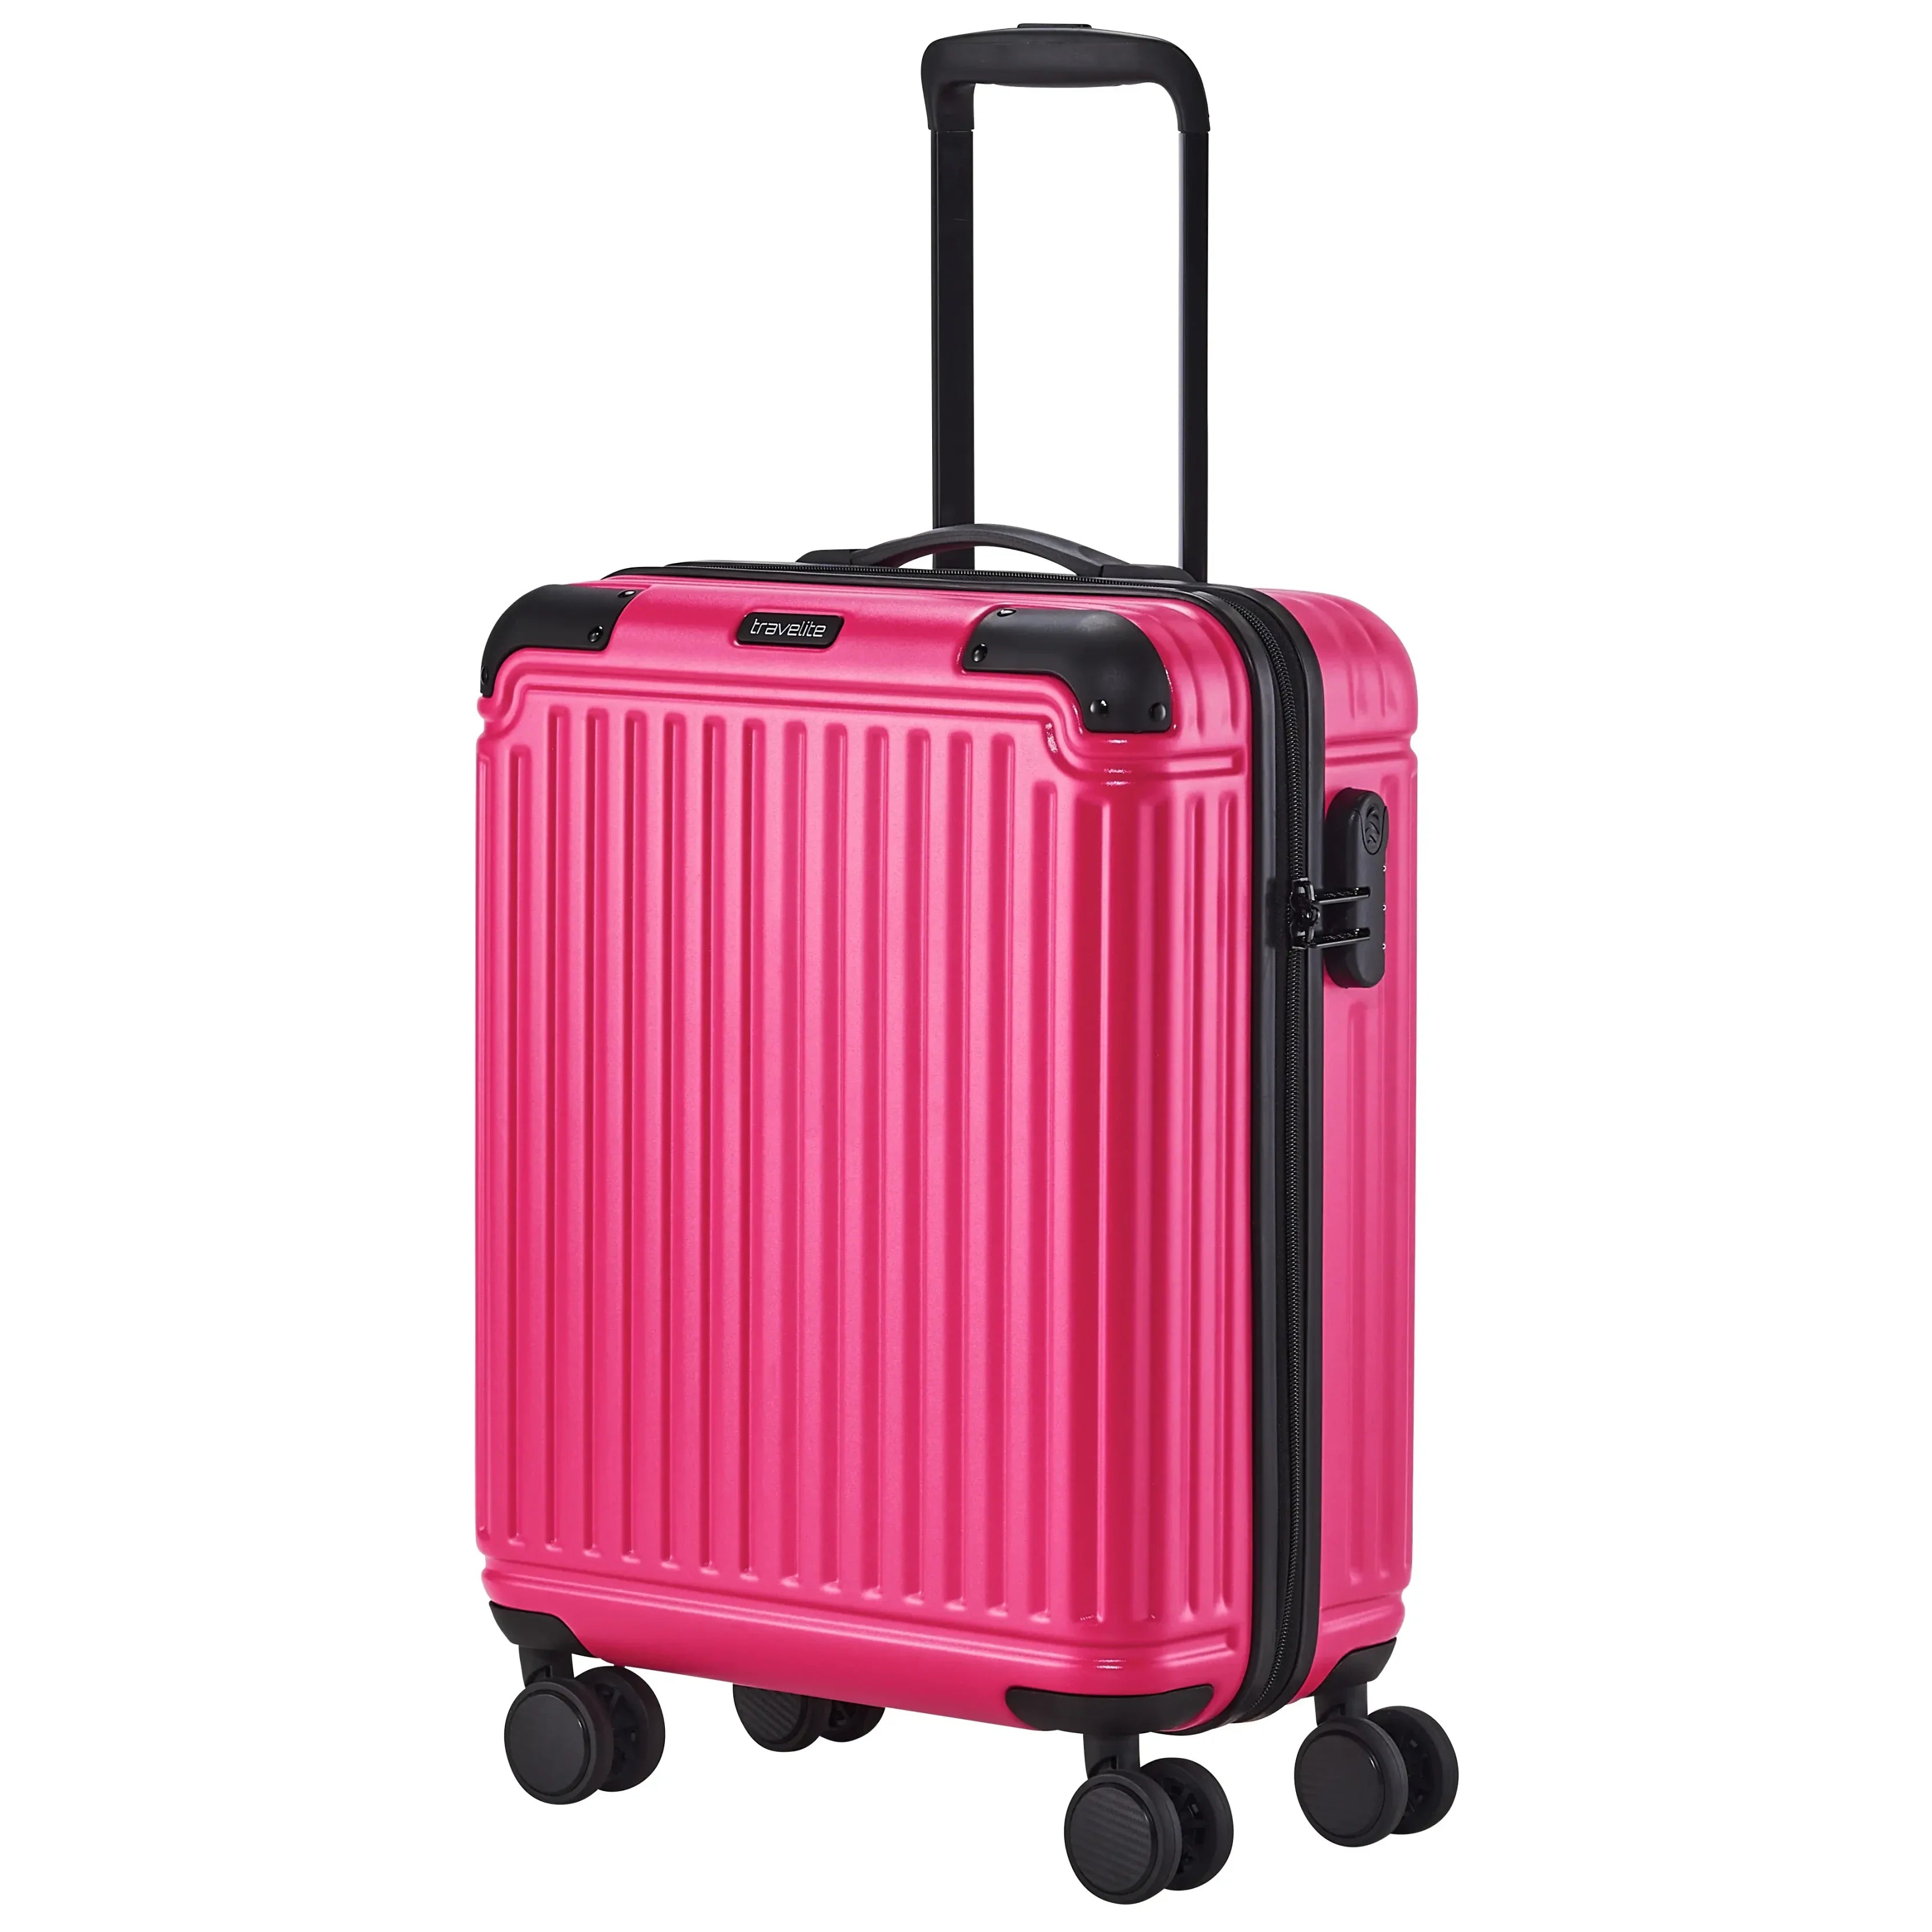 Travelite Cruise 4-Rollen Trolley 55 cm - Pink